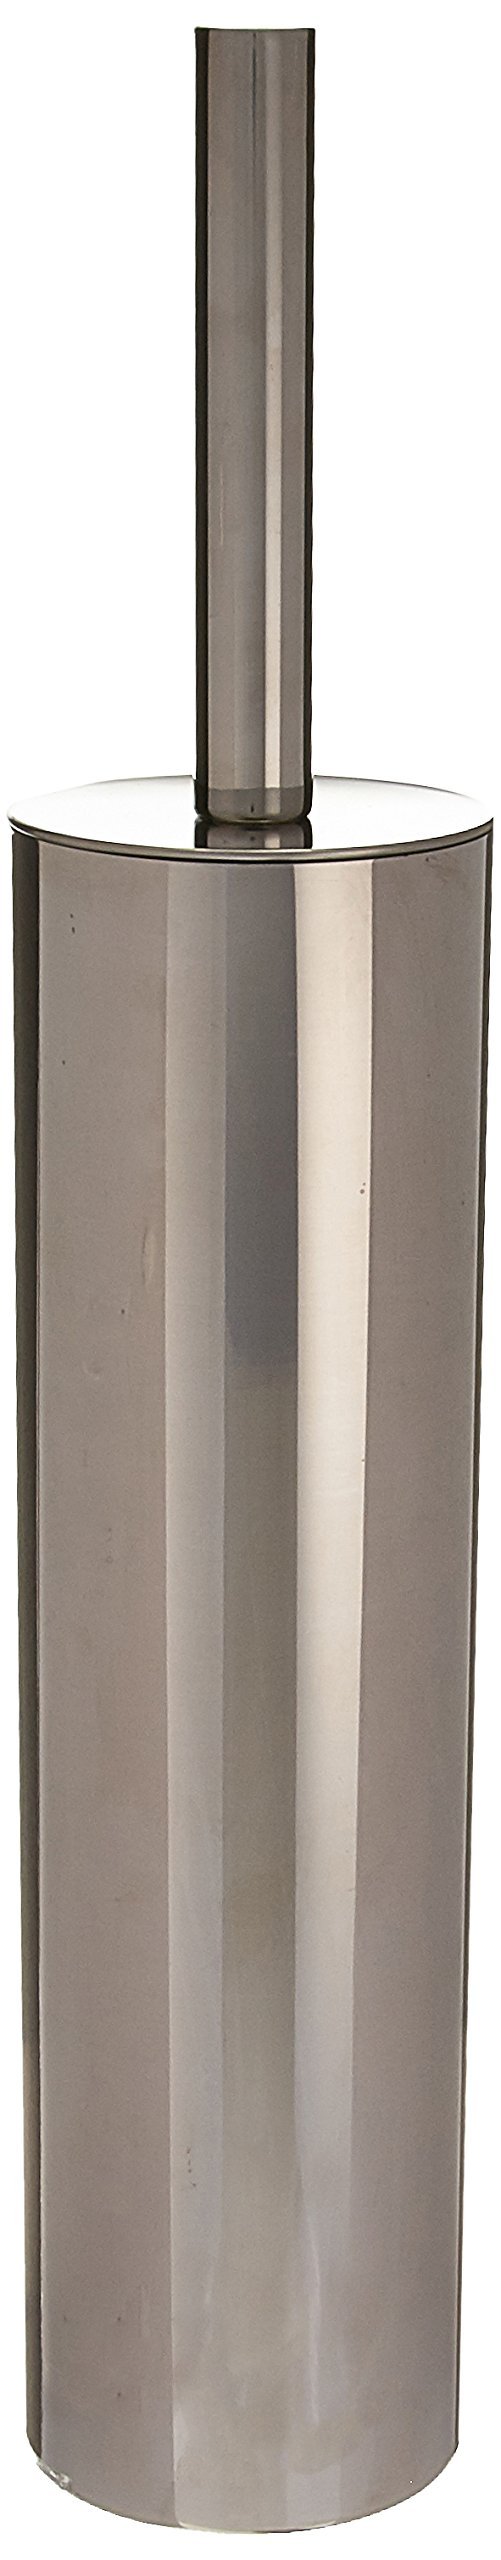 Gedy ED34-13 Toilet Brush Holder, 1.07" L x 2.95" W, Chrome - NewNest Australia